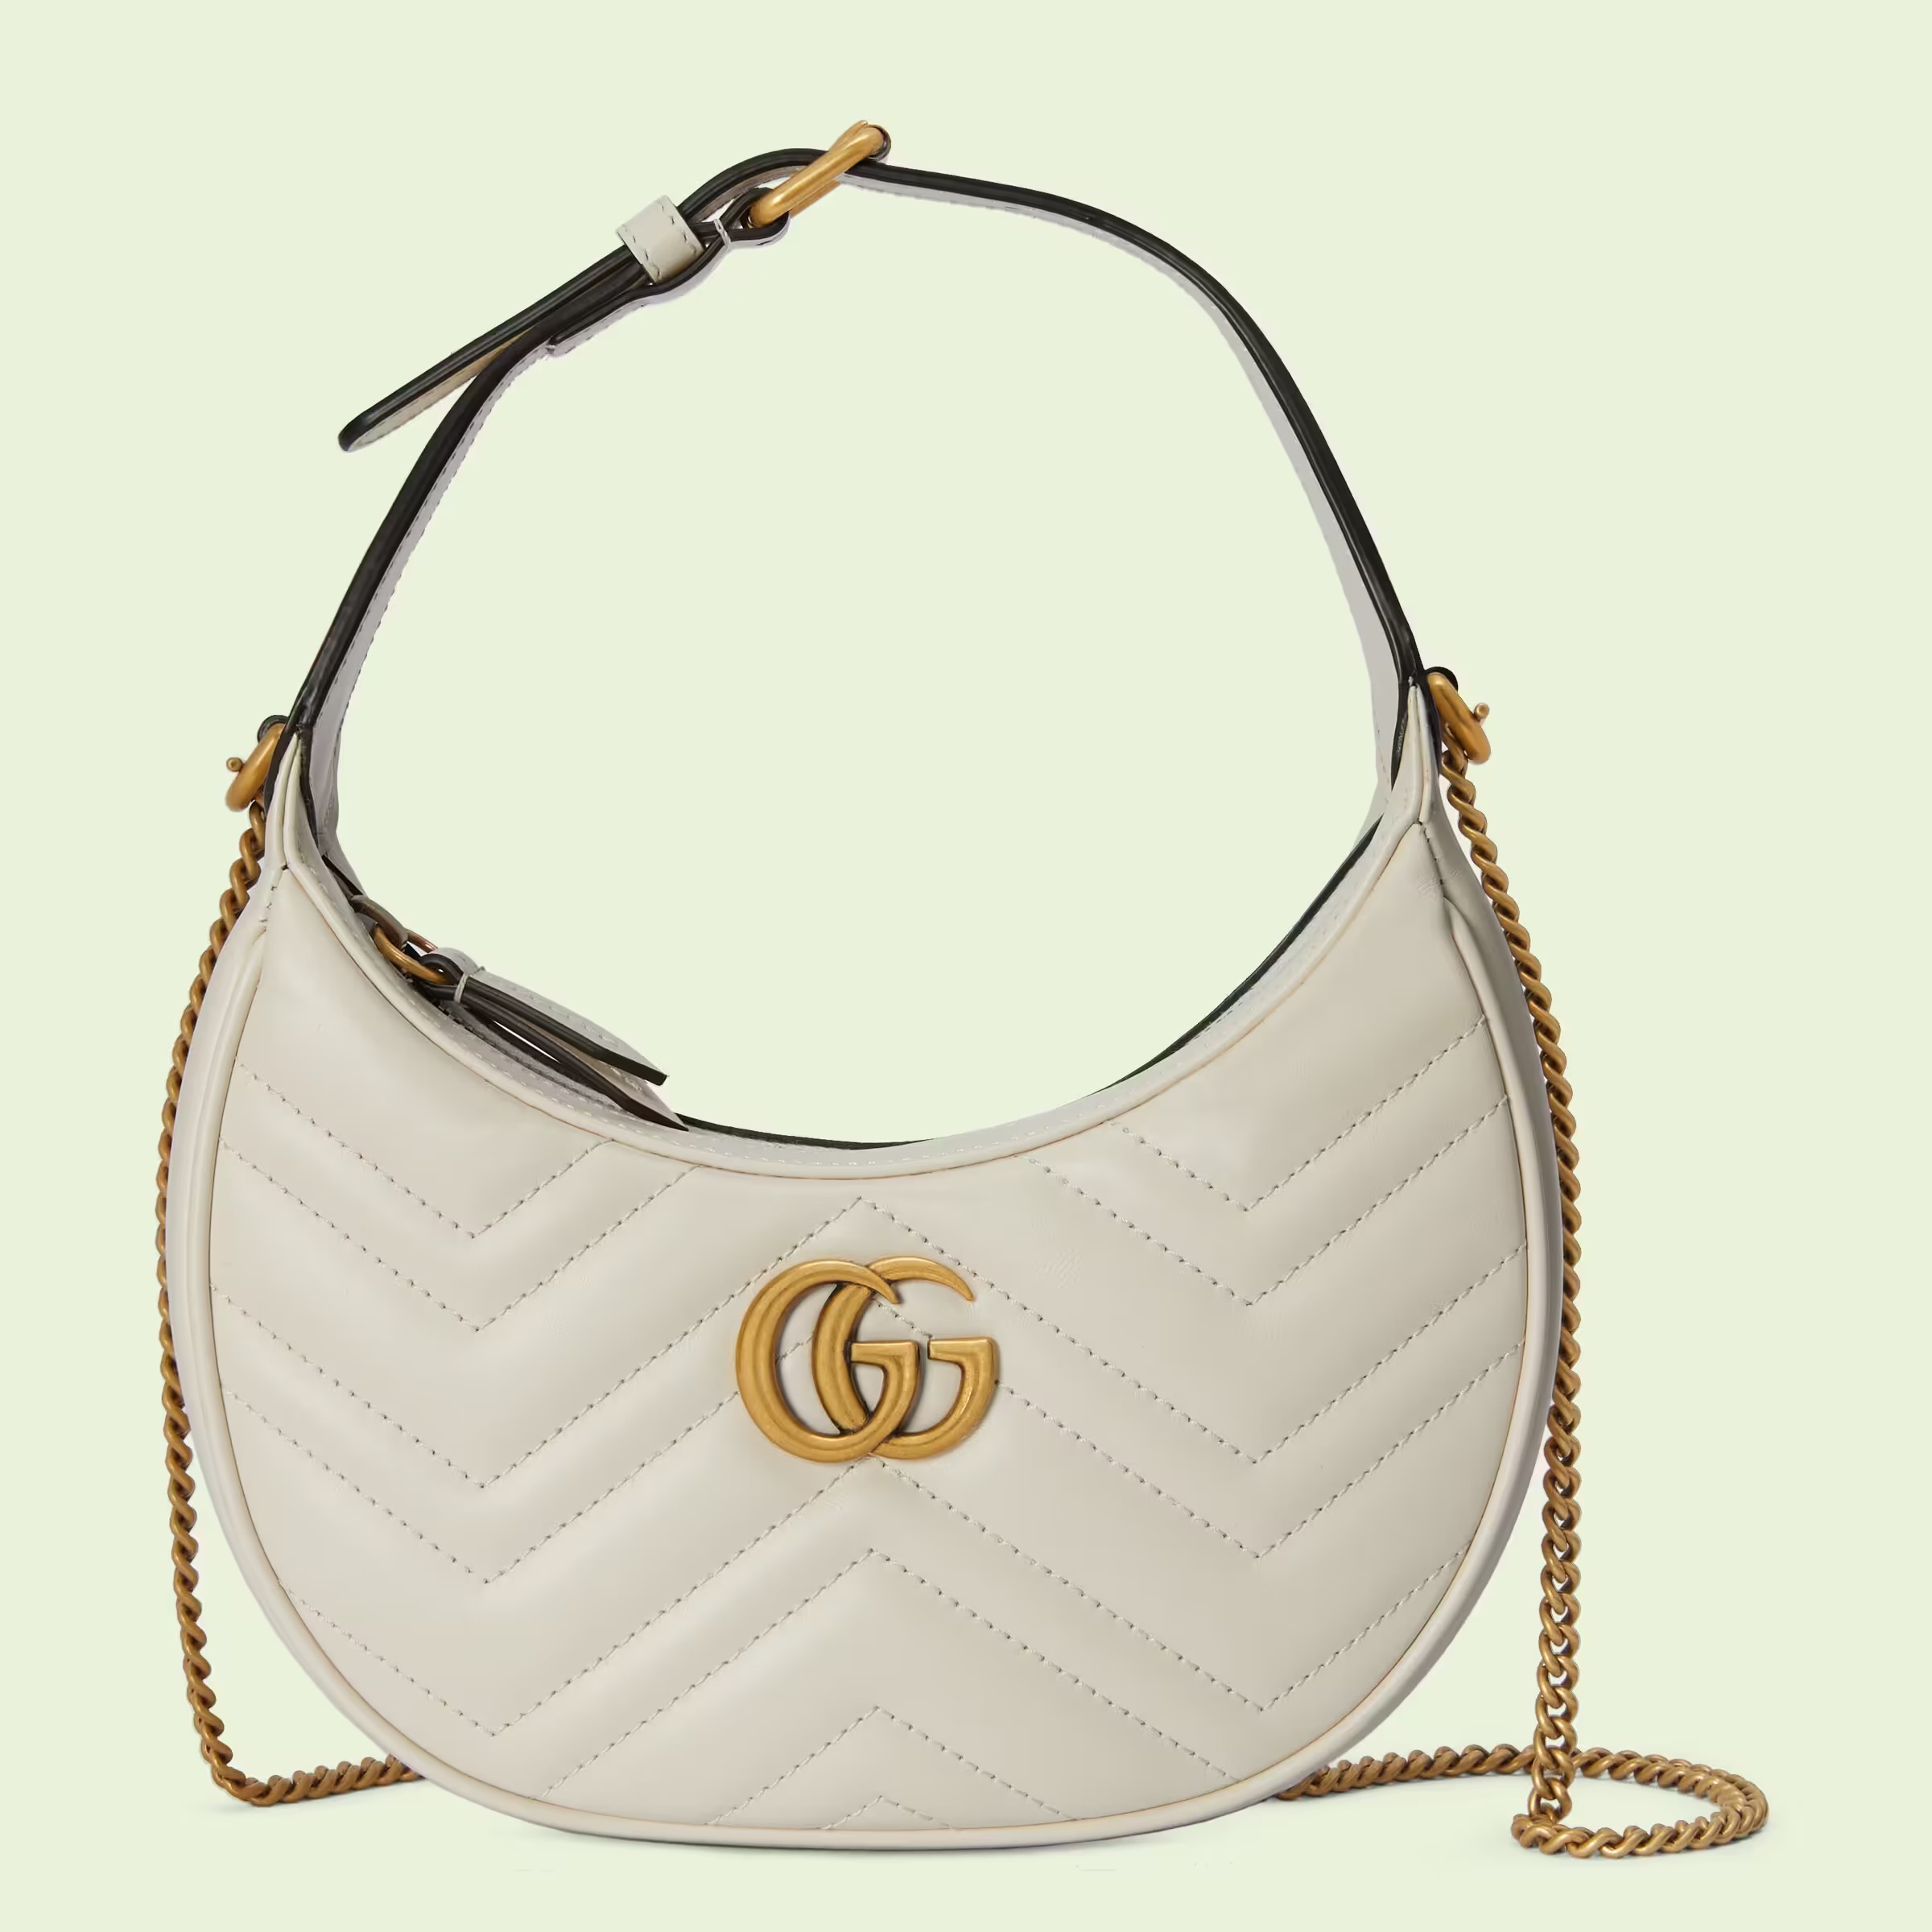 13 of the Most Affordable Designer Handbag Brands for Budget